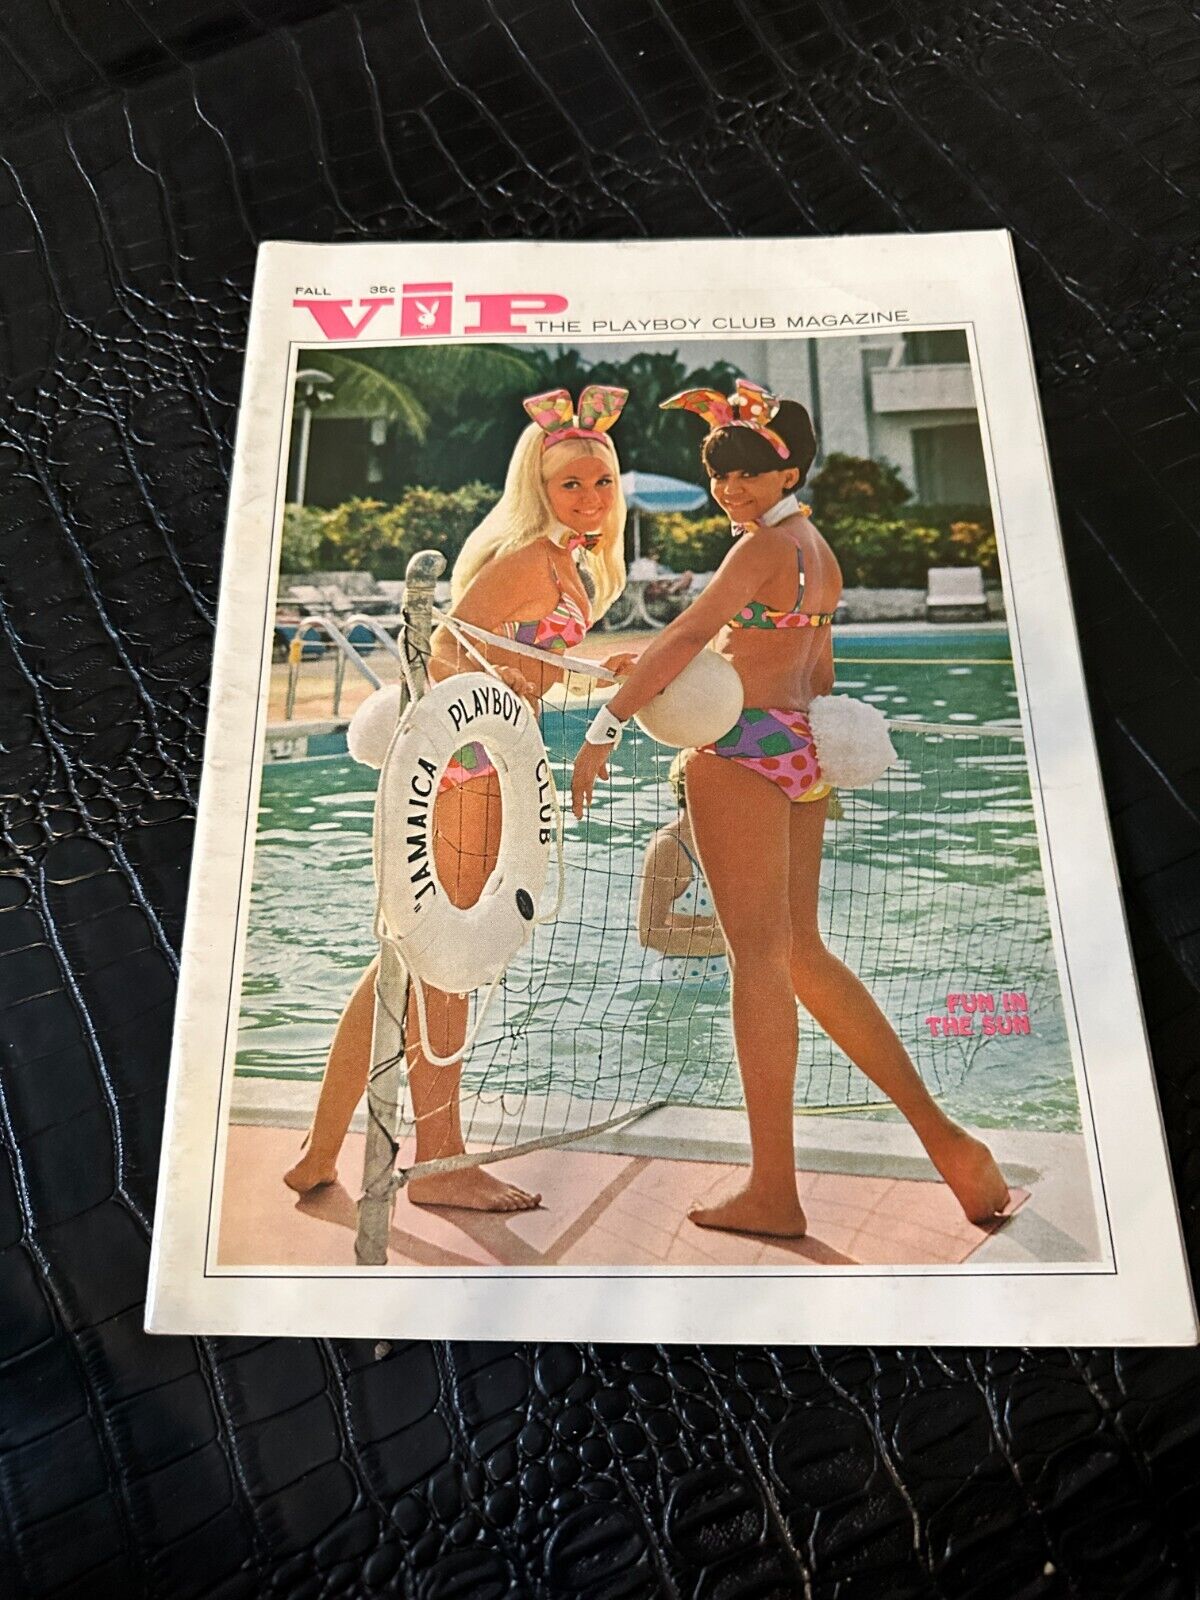 FALL 1969 VIP playboy club magazine